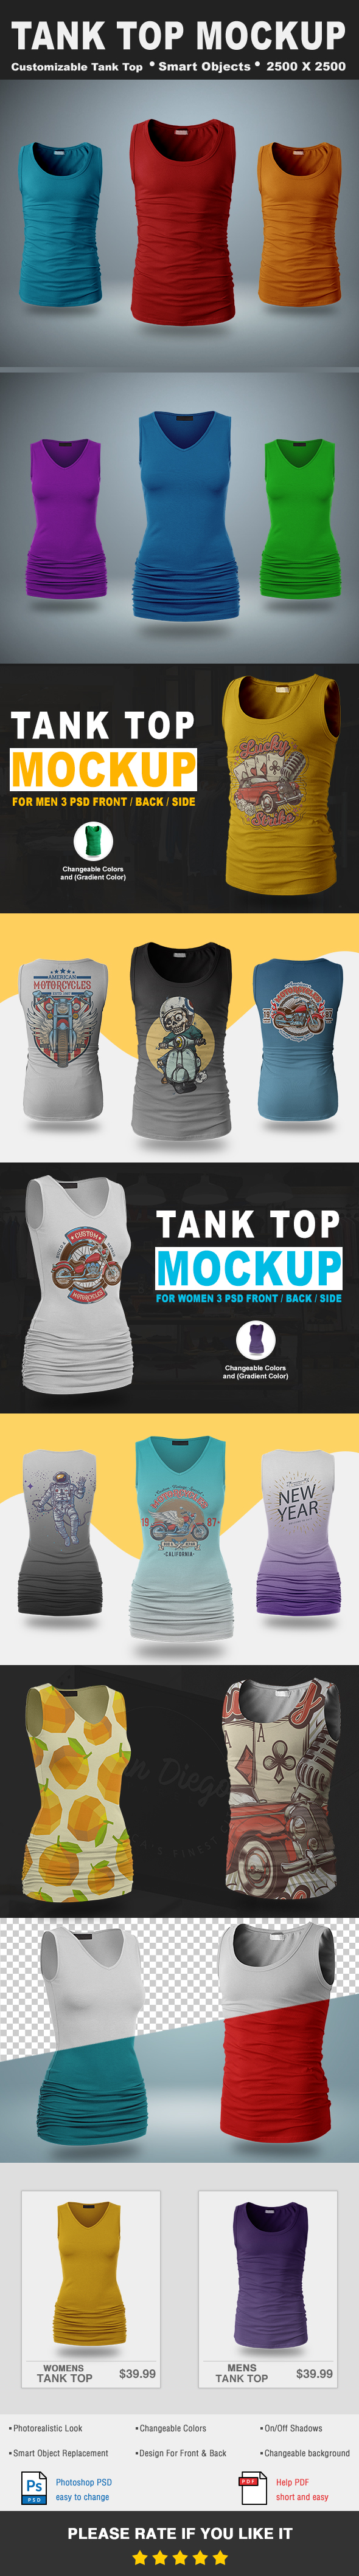 tank top mockup Tank top Mockup women men t-shirt apparel clothes tees